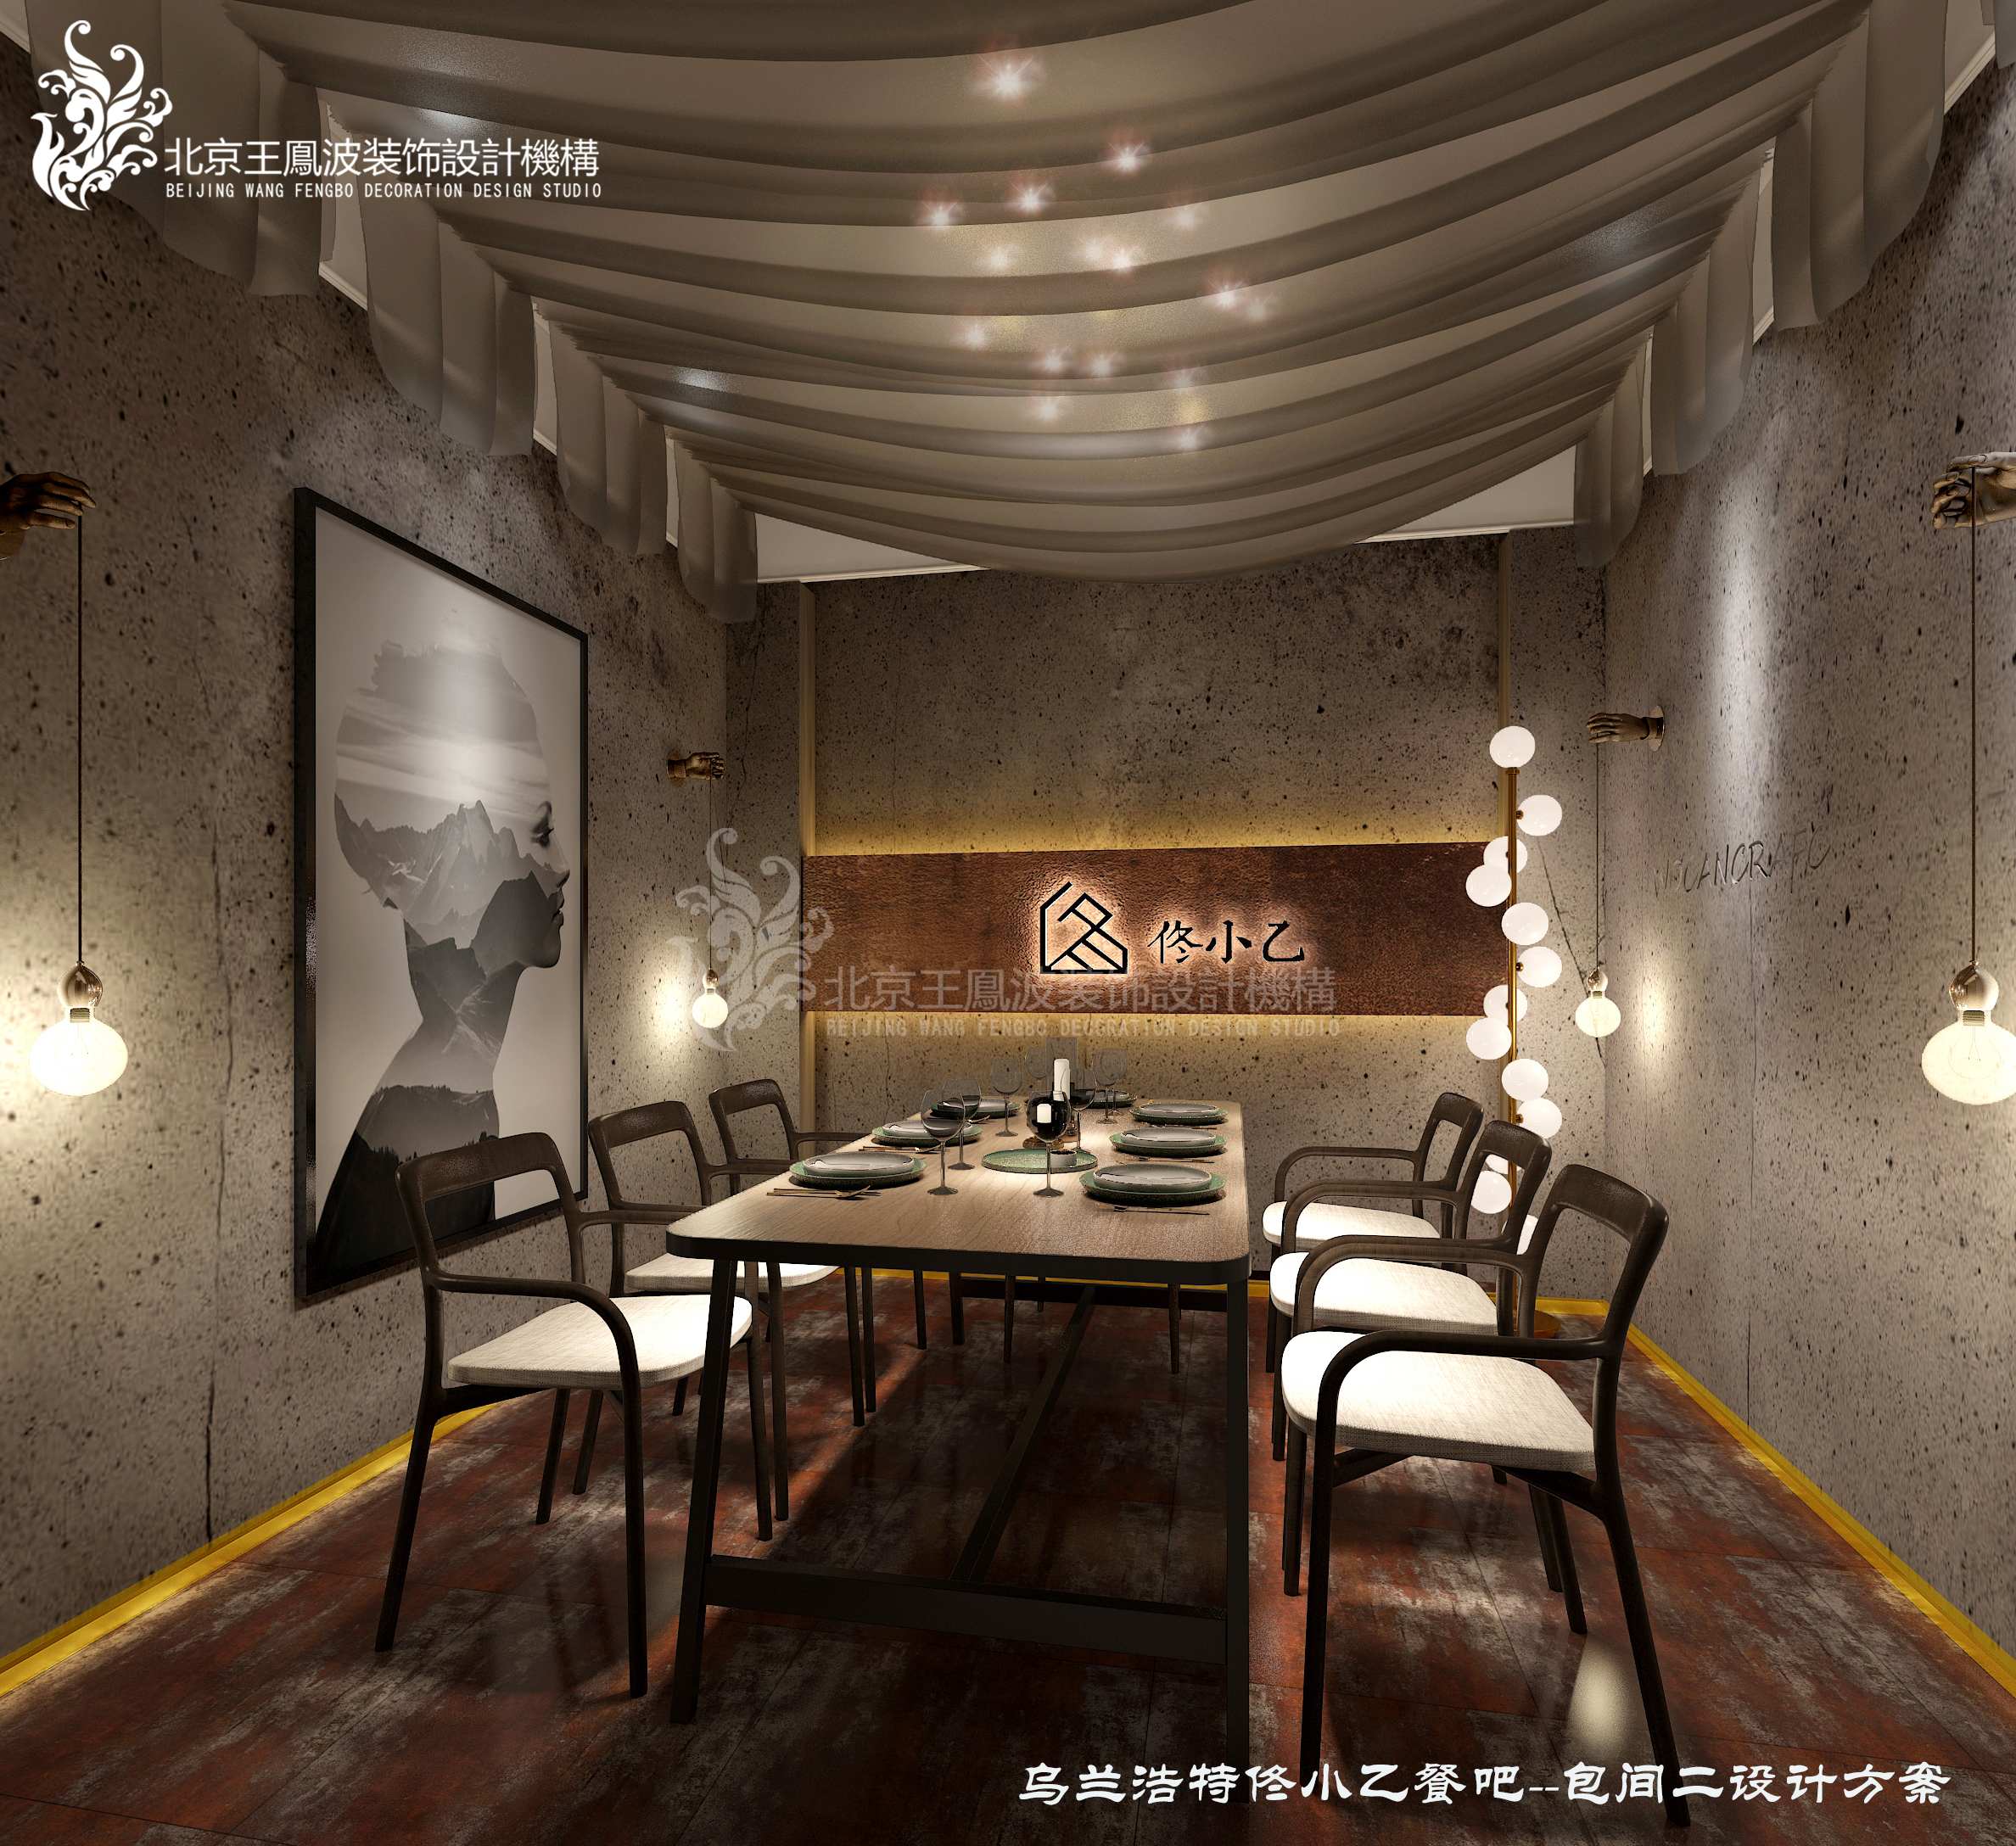 餐厅 设计 -呼和浩特 餐厅设计 红城餐吧图片来自王凤波设计机构在餐厅设计-呼和浩特餐吧红城的分享